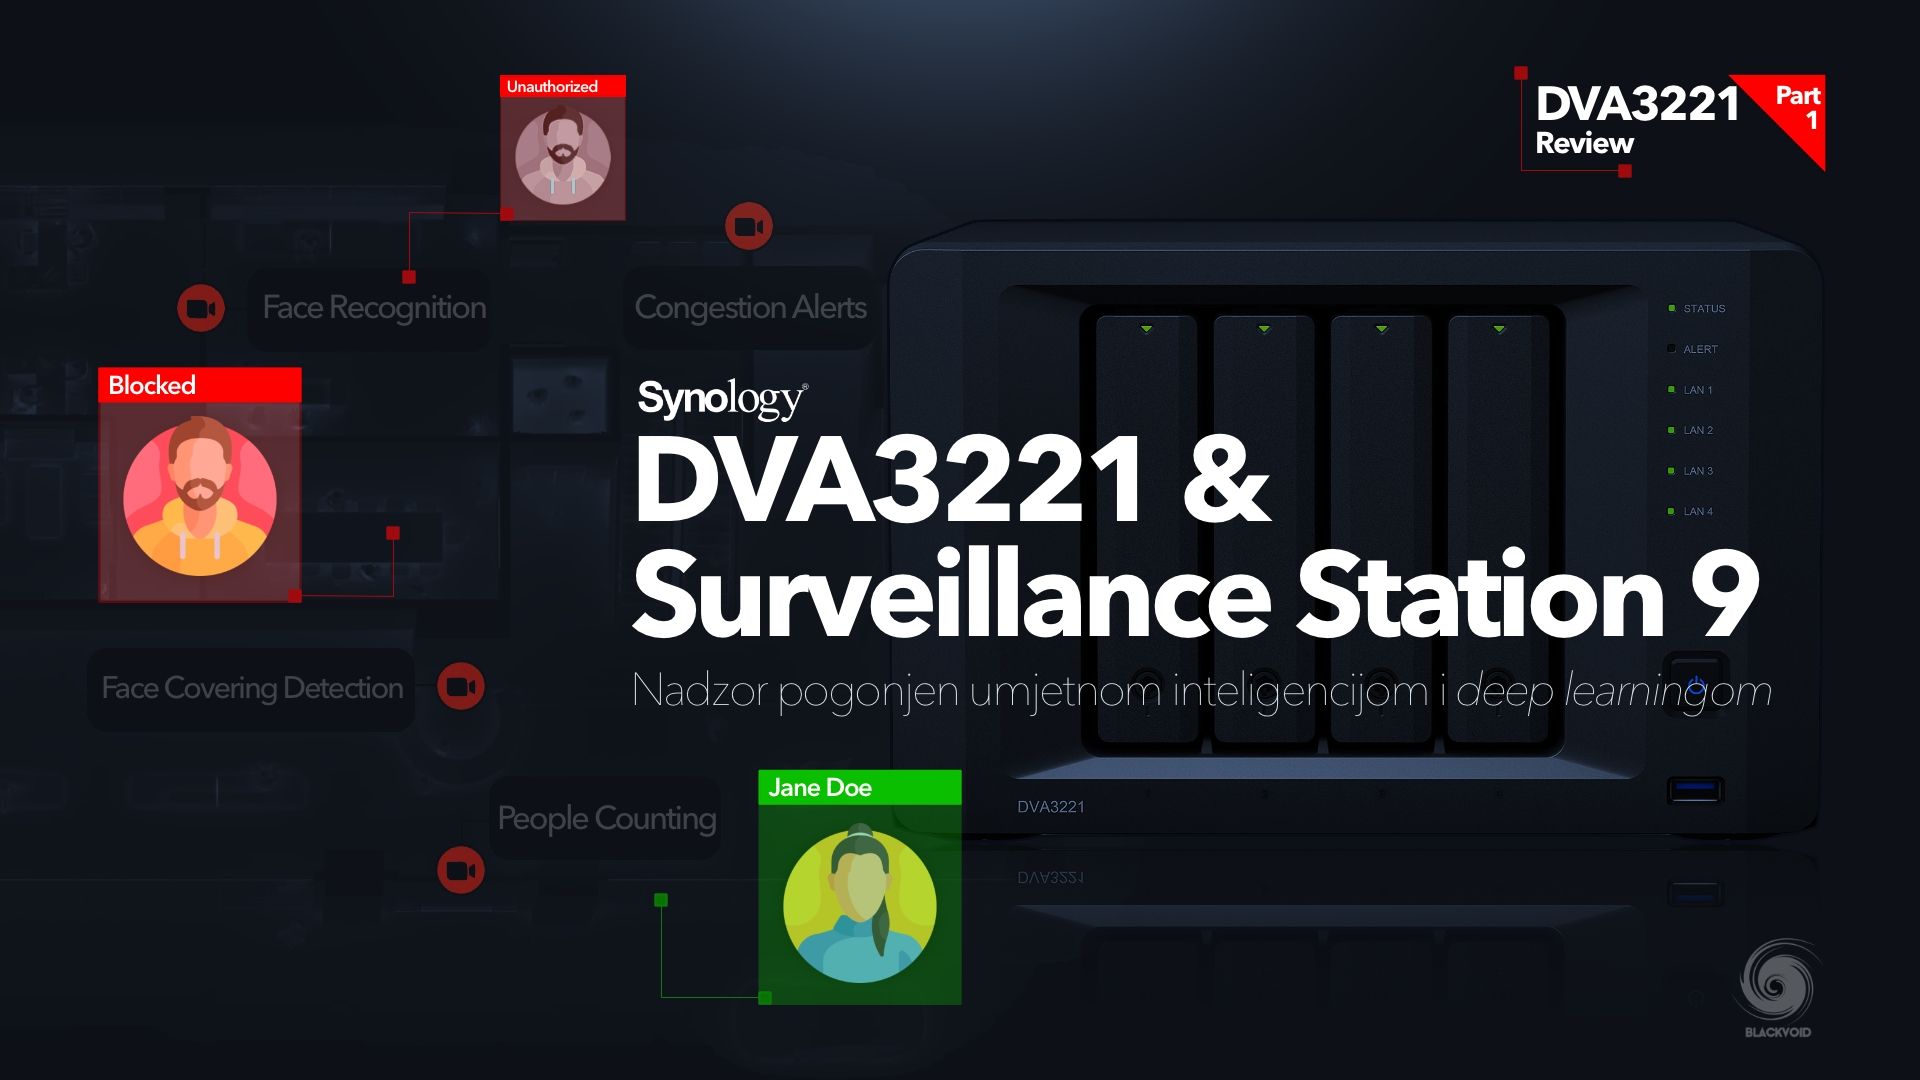 Synology DVA3221 i  Surveillance Station 9 osvrt - 1. dio